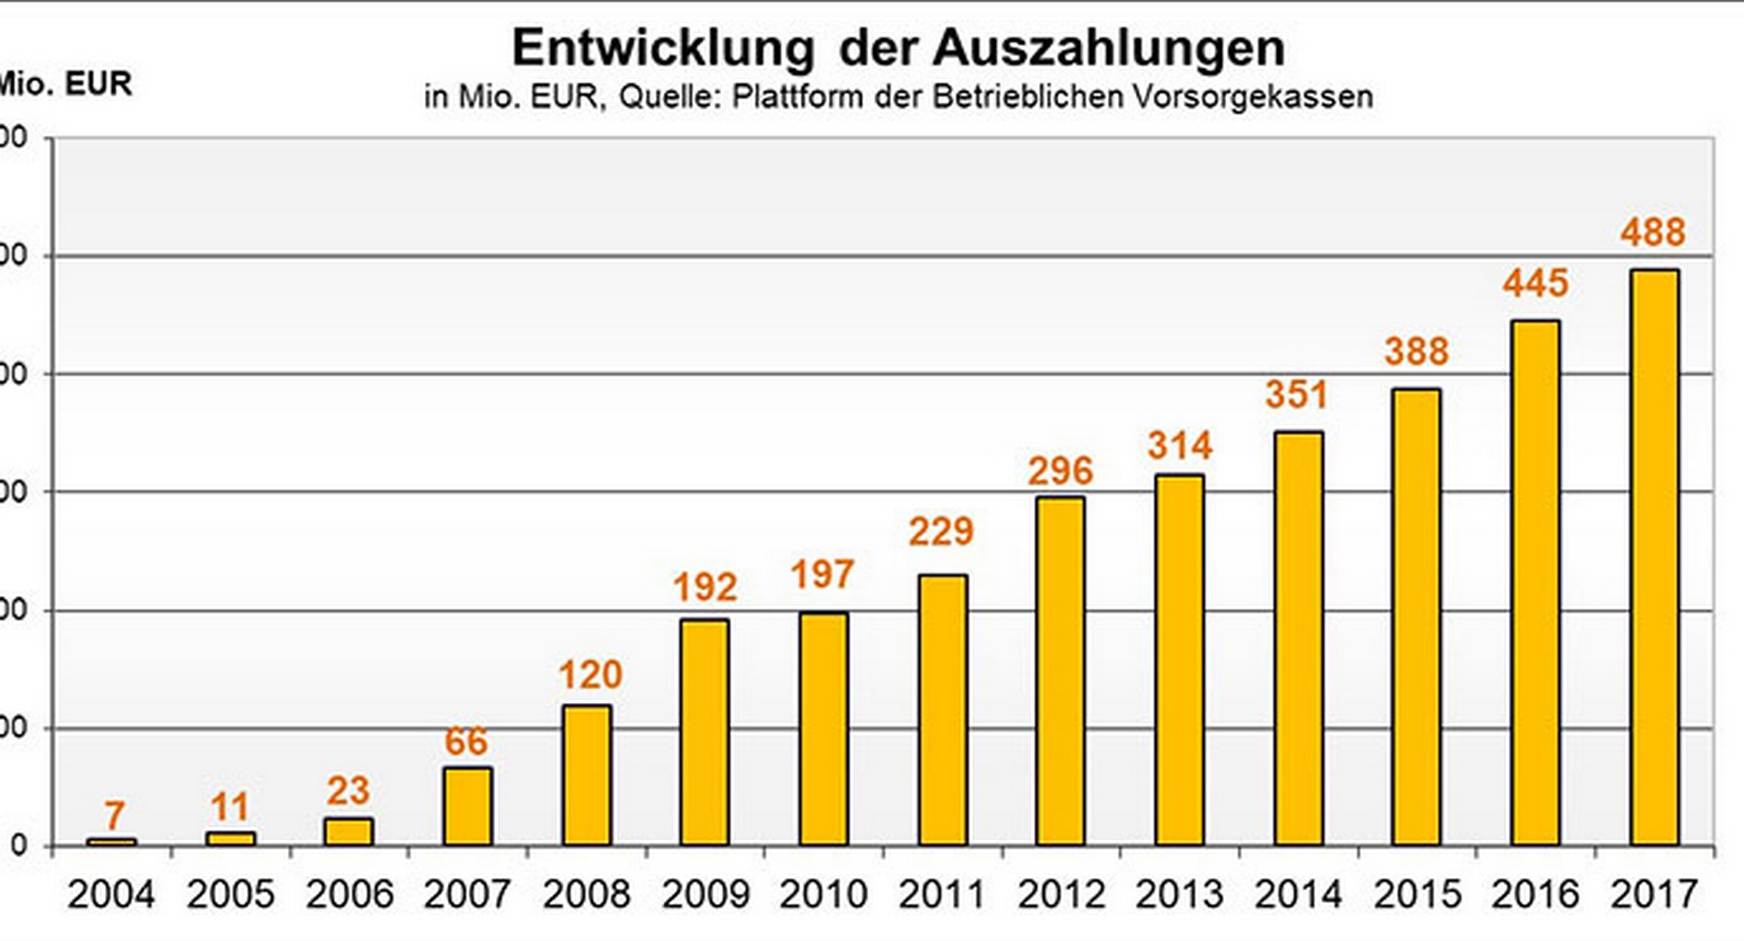 Balkendiagramm zur Entwicklung der Auszahlungen im Jahresvergleich von 2004 bis 2017